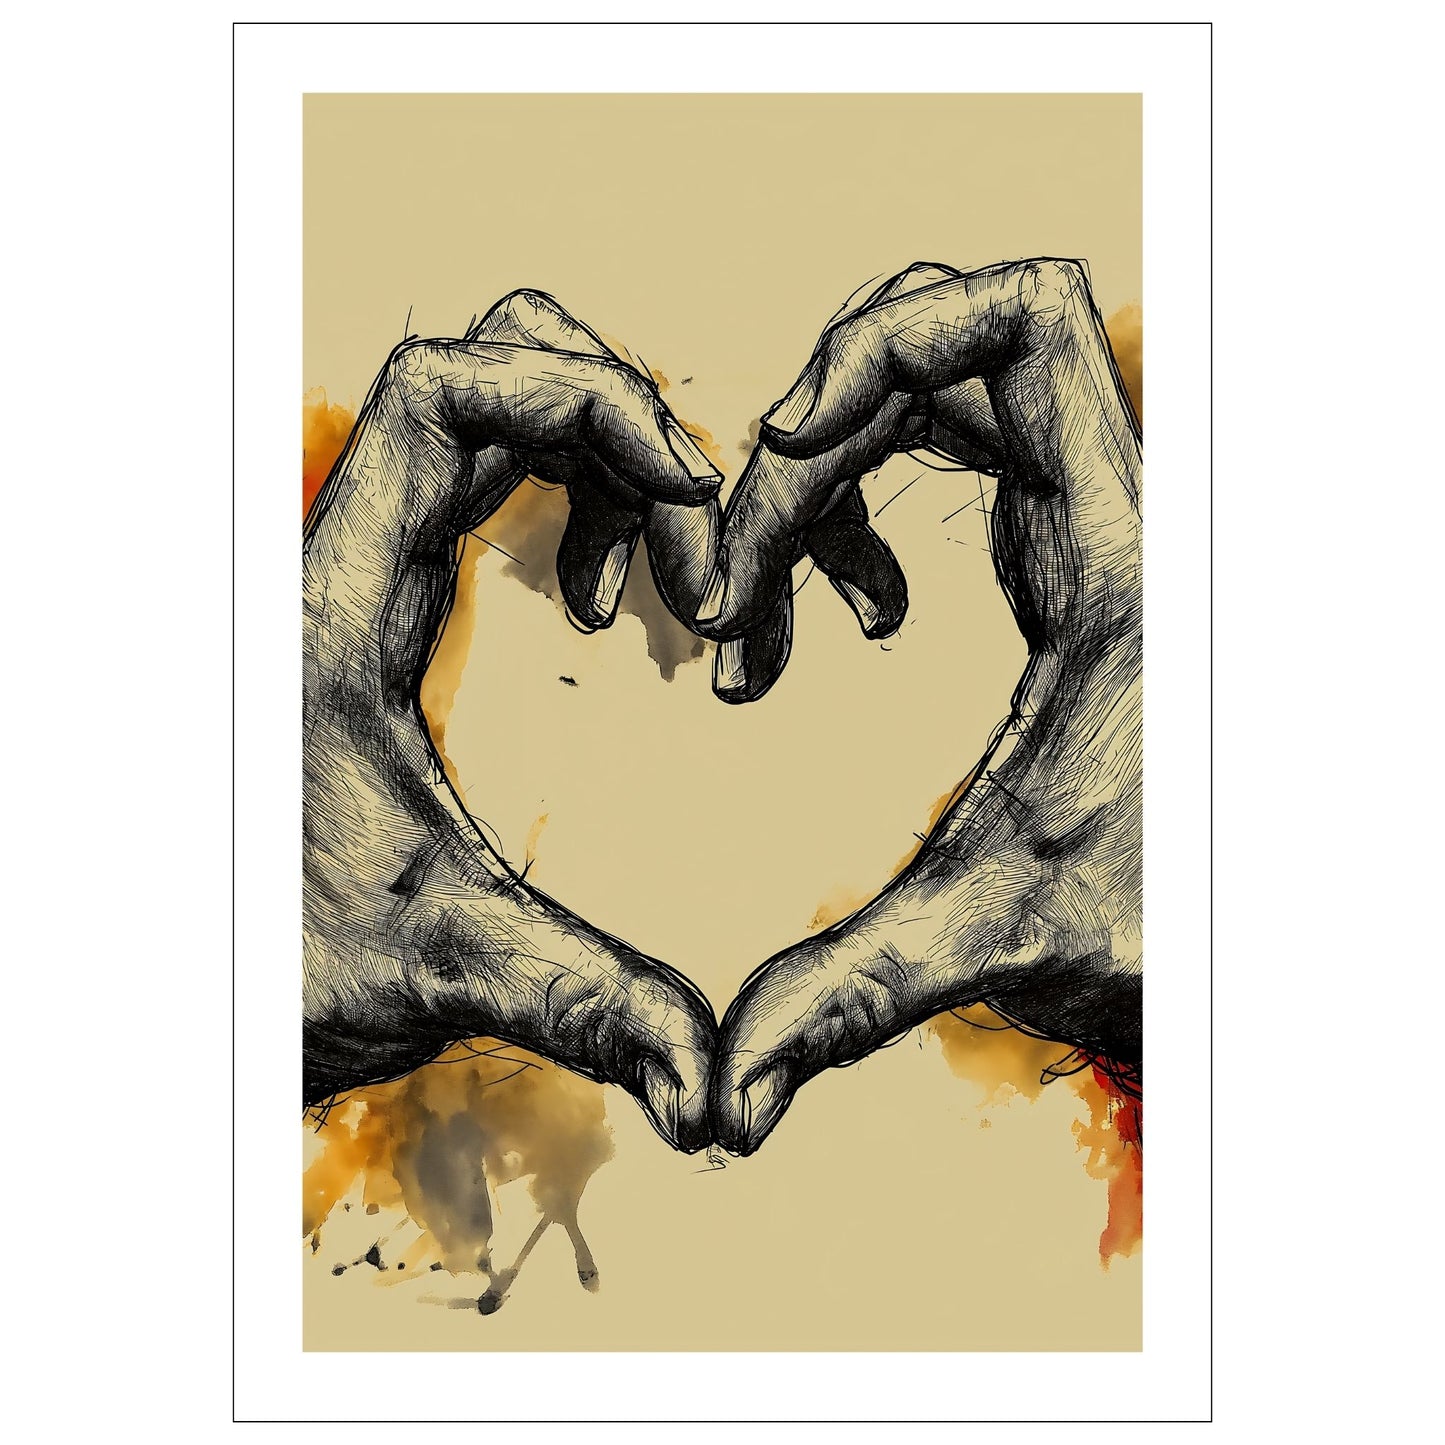 Plakat illustrasjon, skapt med kulltegning av to hender som danner en hjerteform, formidler dypet av ekte kjærlighet og omsorg.